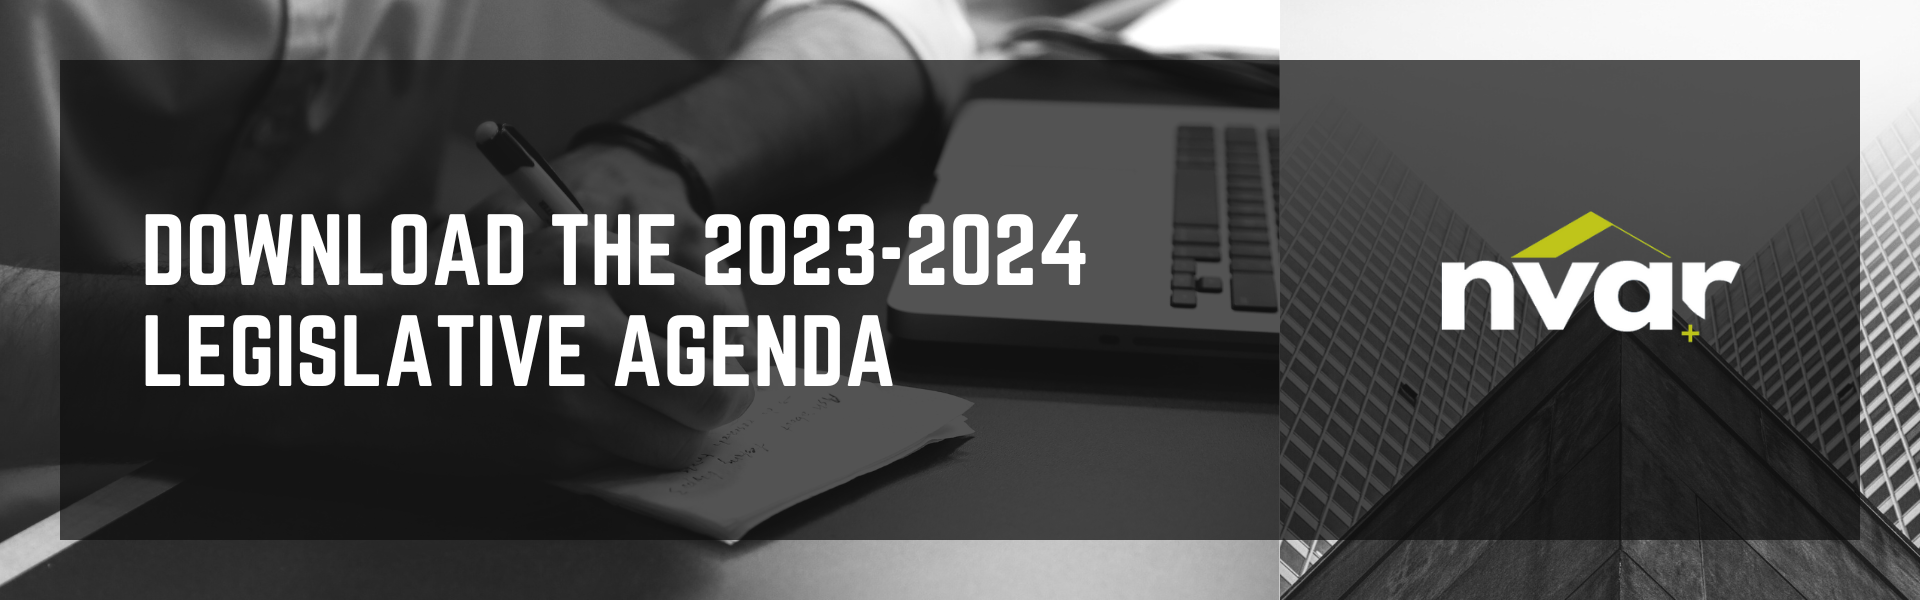 Download the 2023-2024 LEGISLATIVE AGENDA